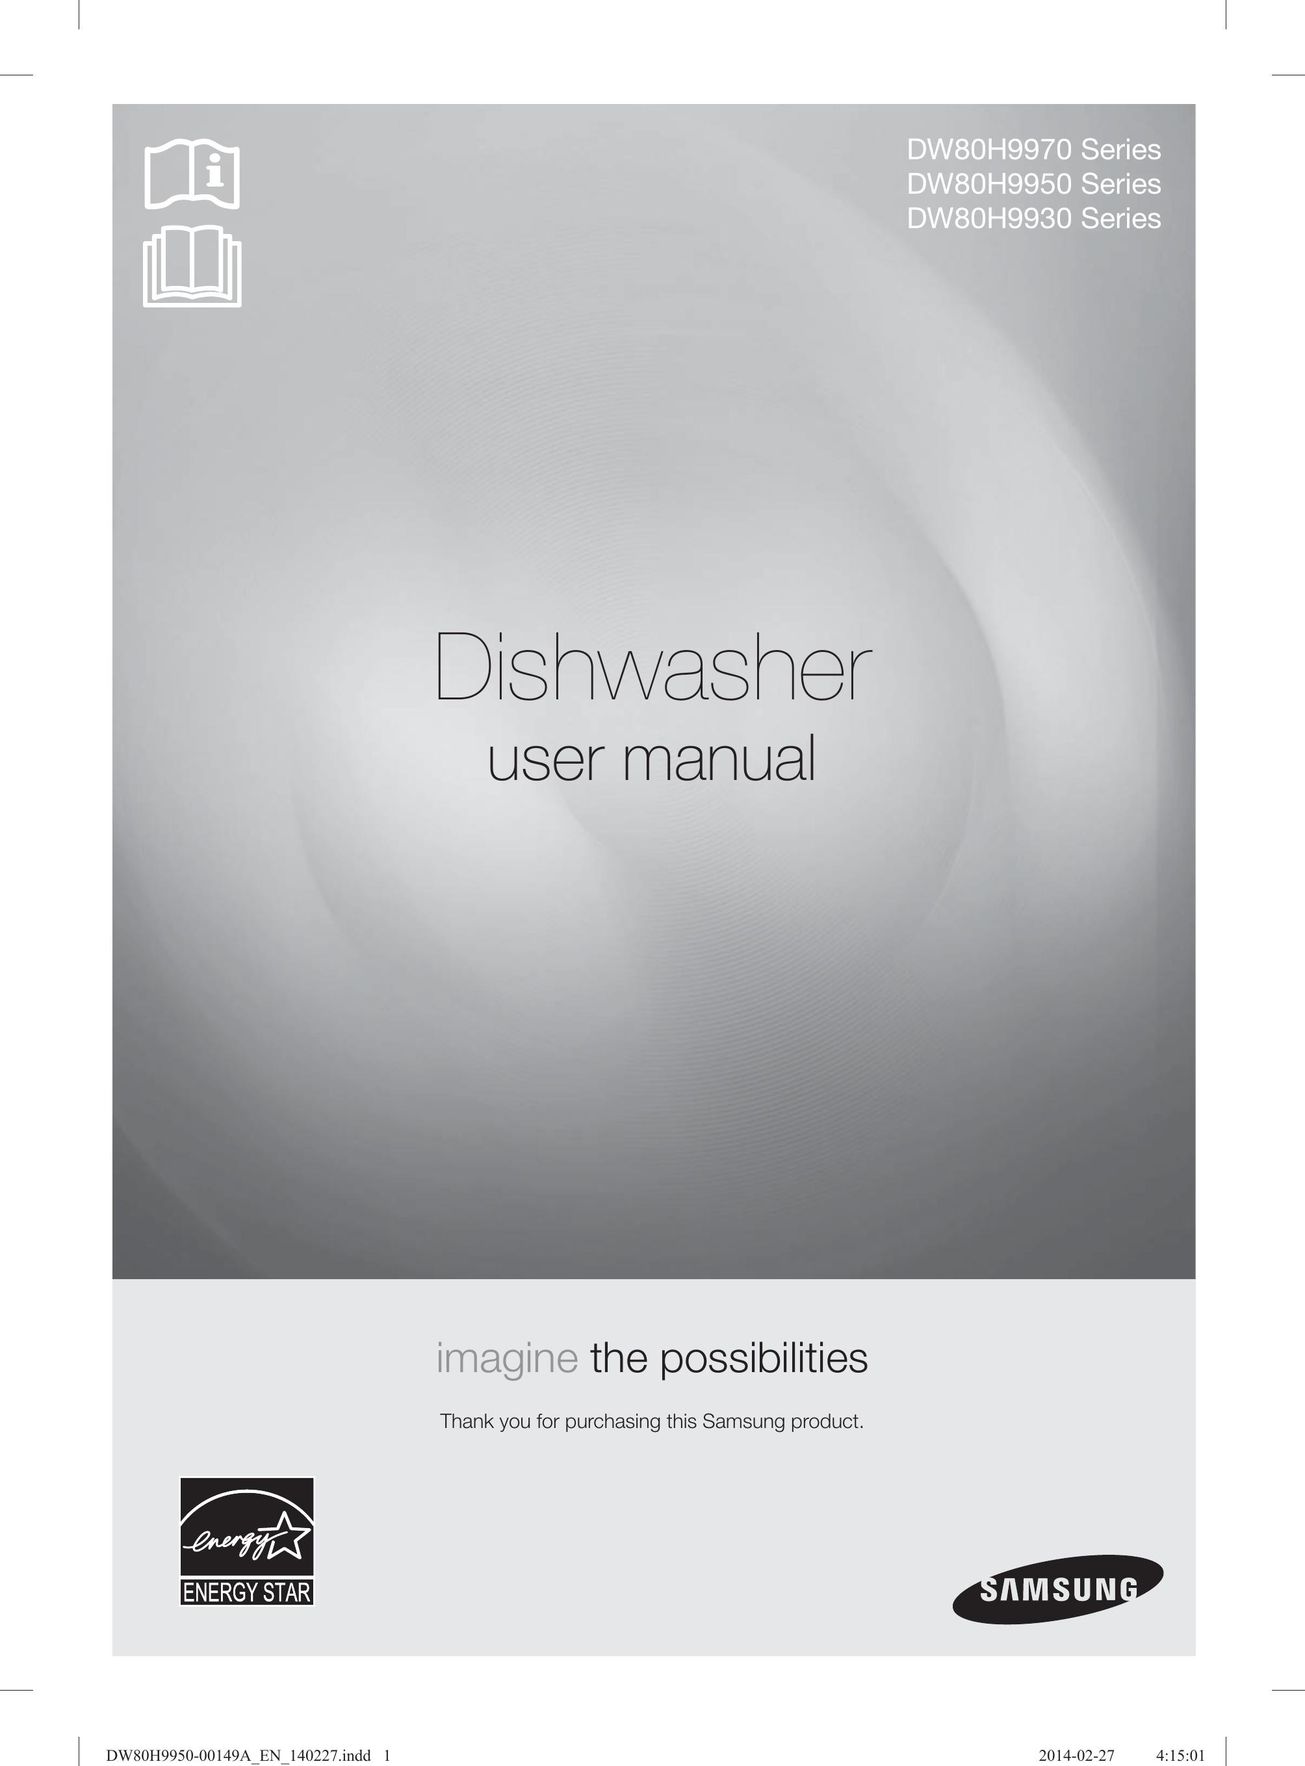 Samsung DW80H9930US Dishwasher User Manual